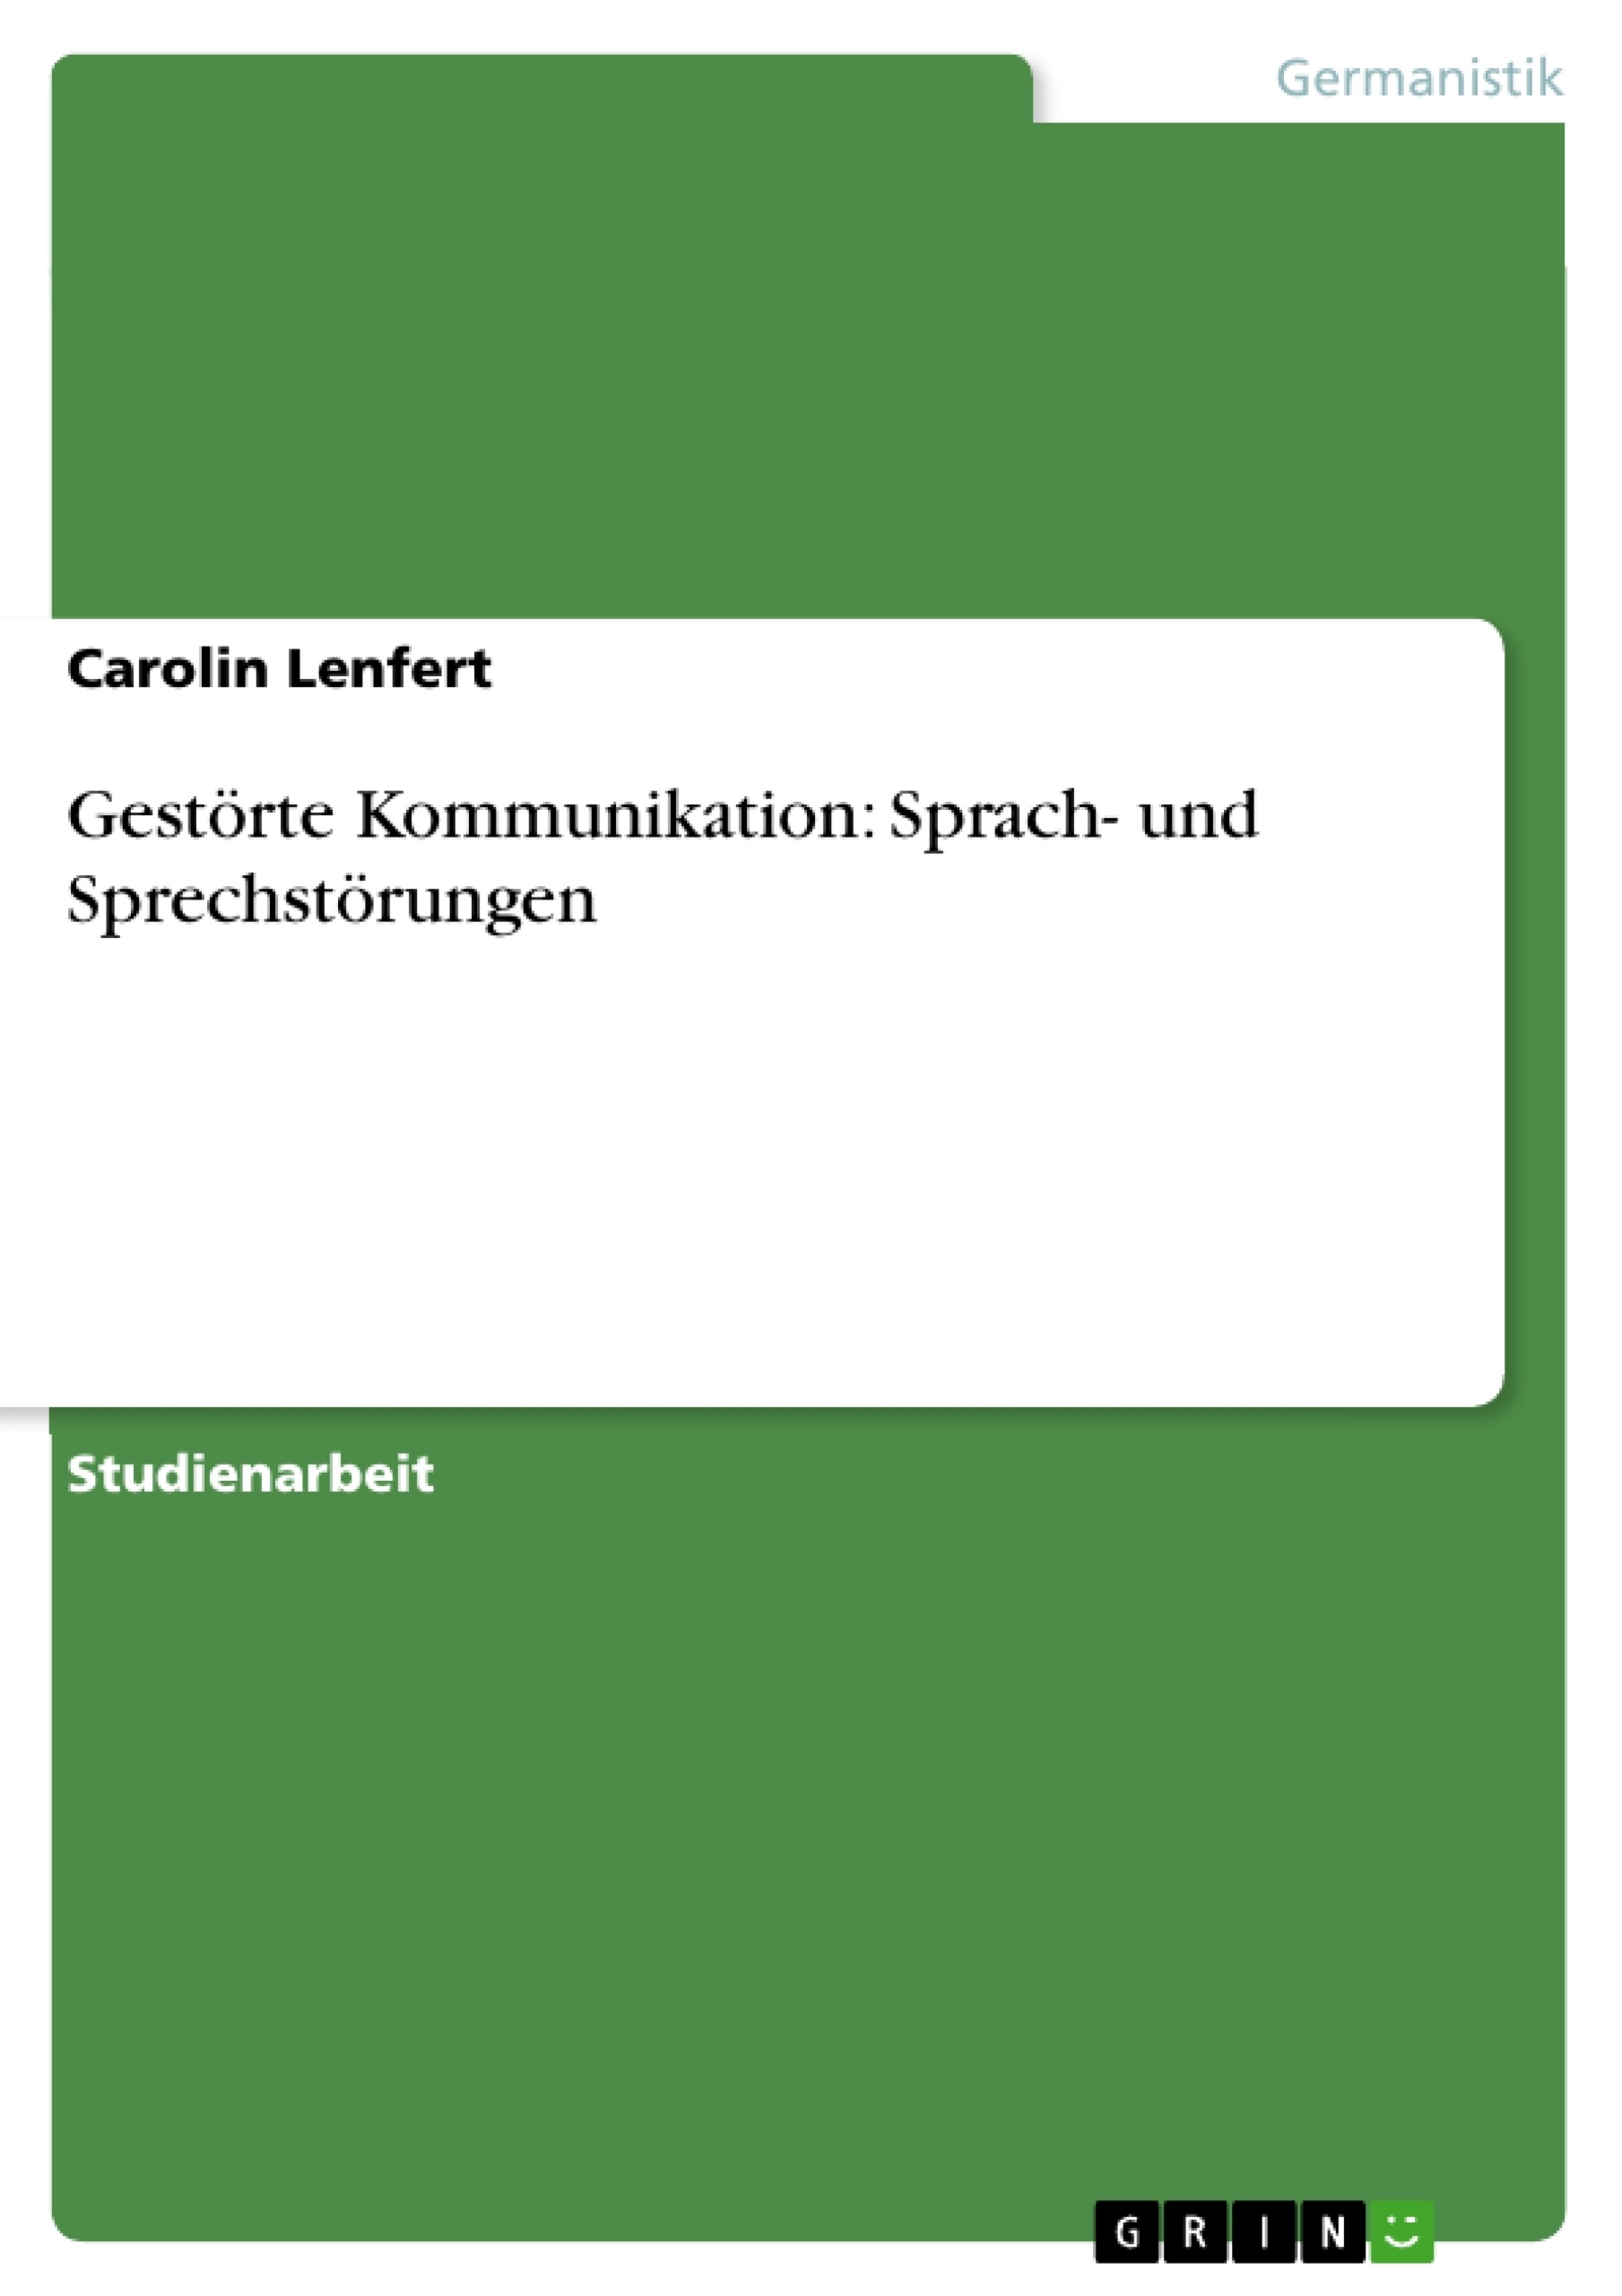 Title: Gestörte Kommunikation: Sprach- und Sprechstörungen